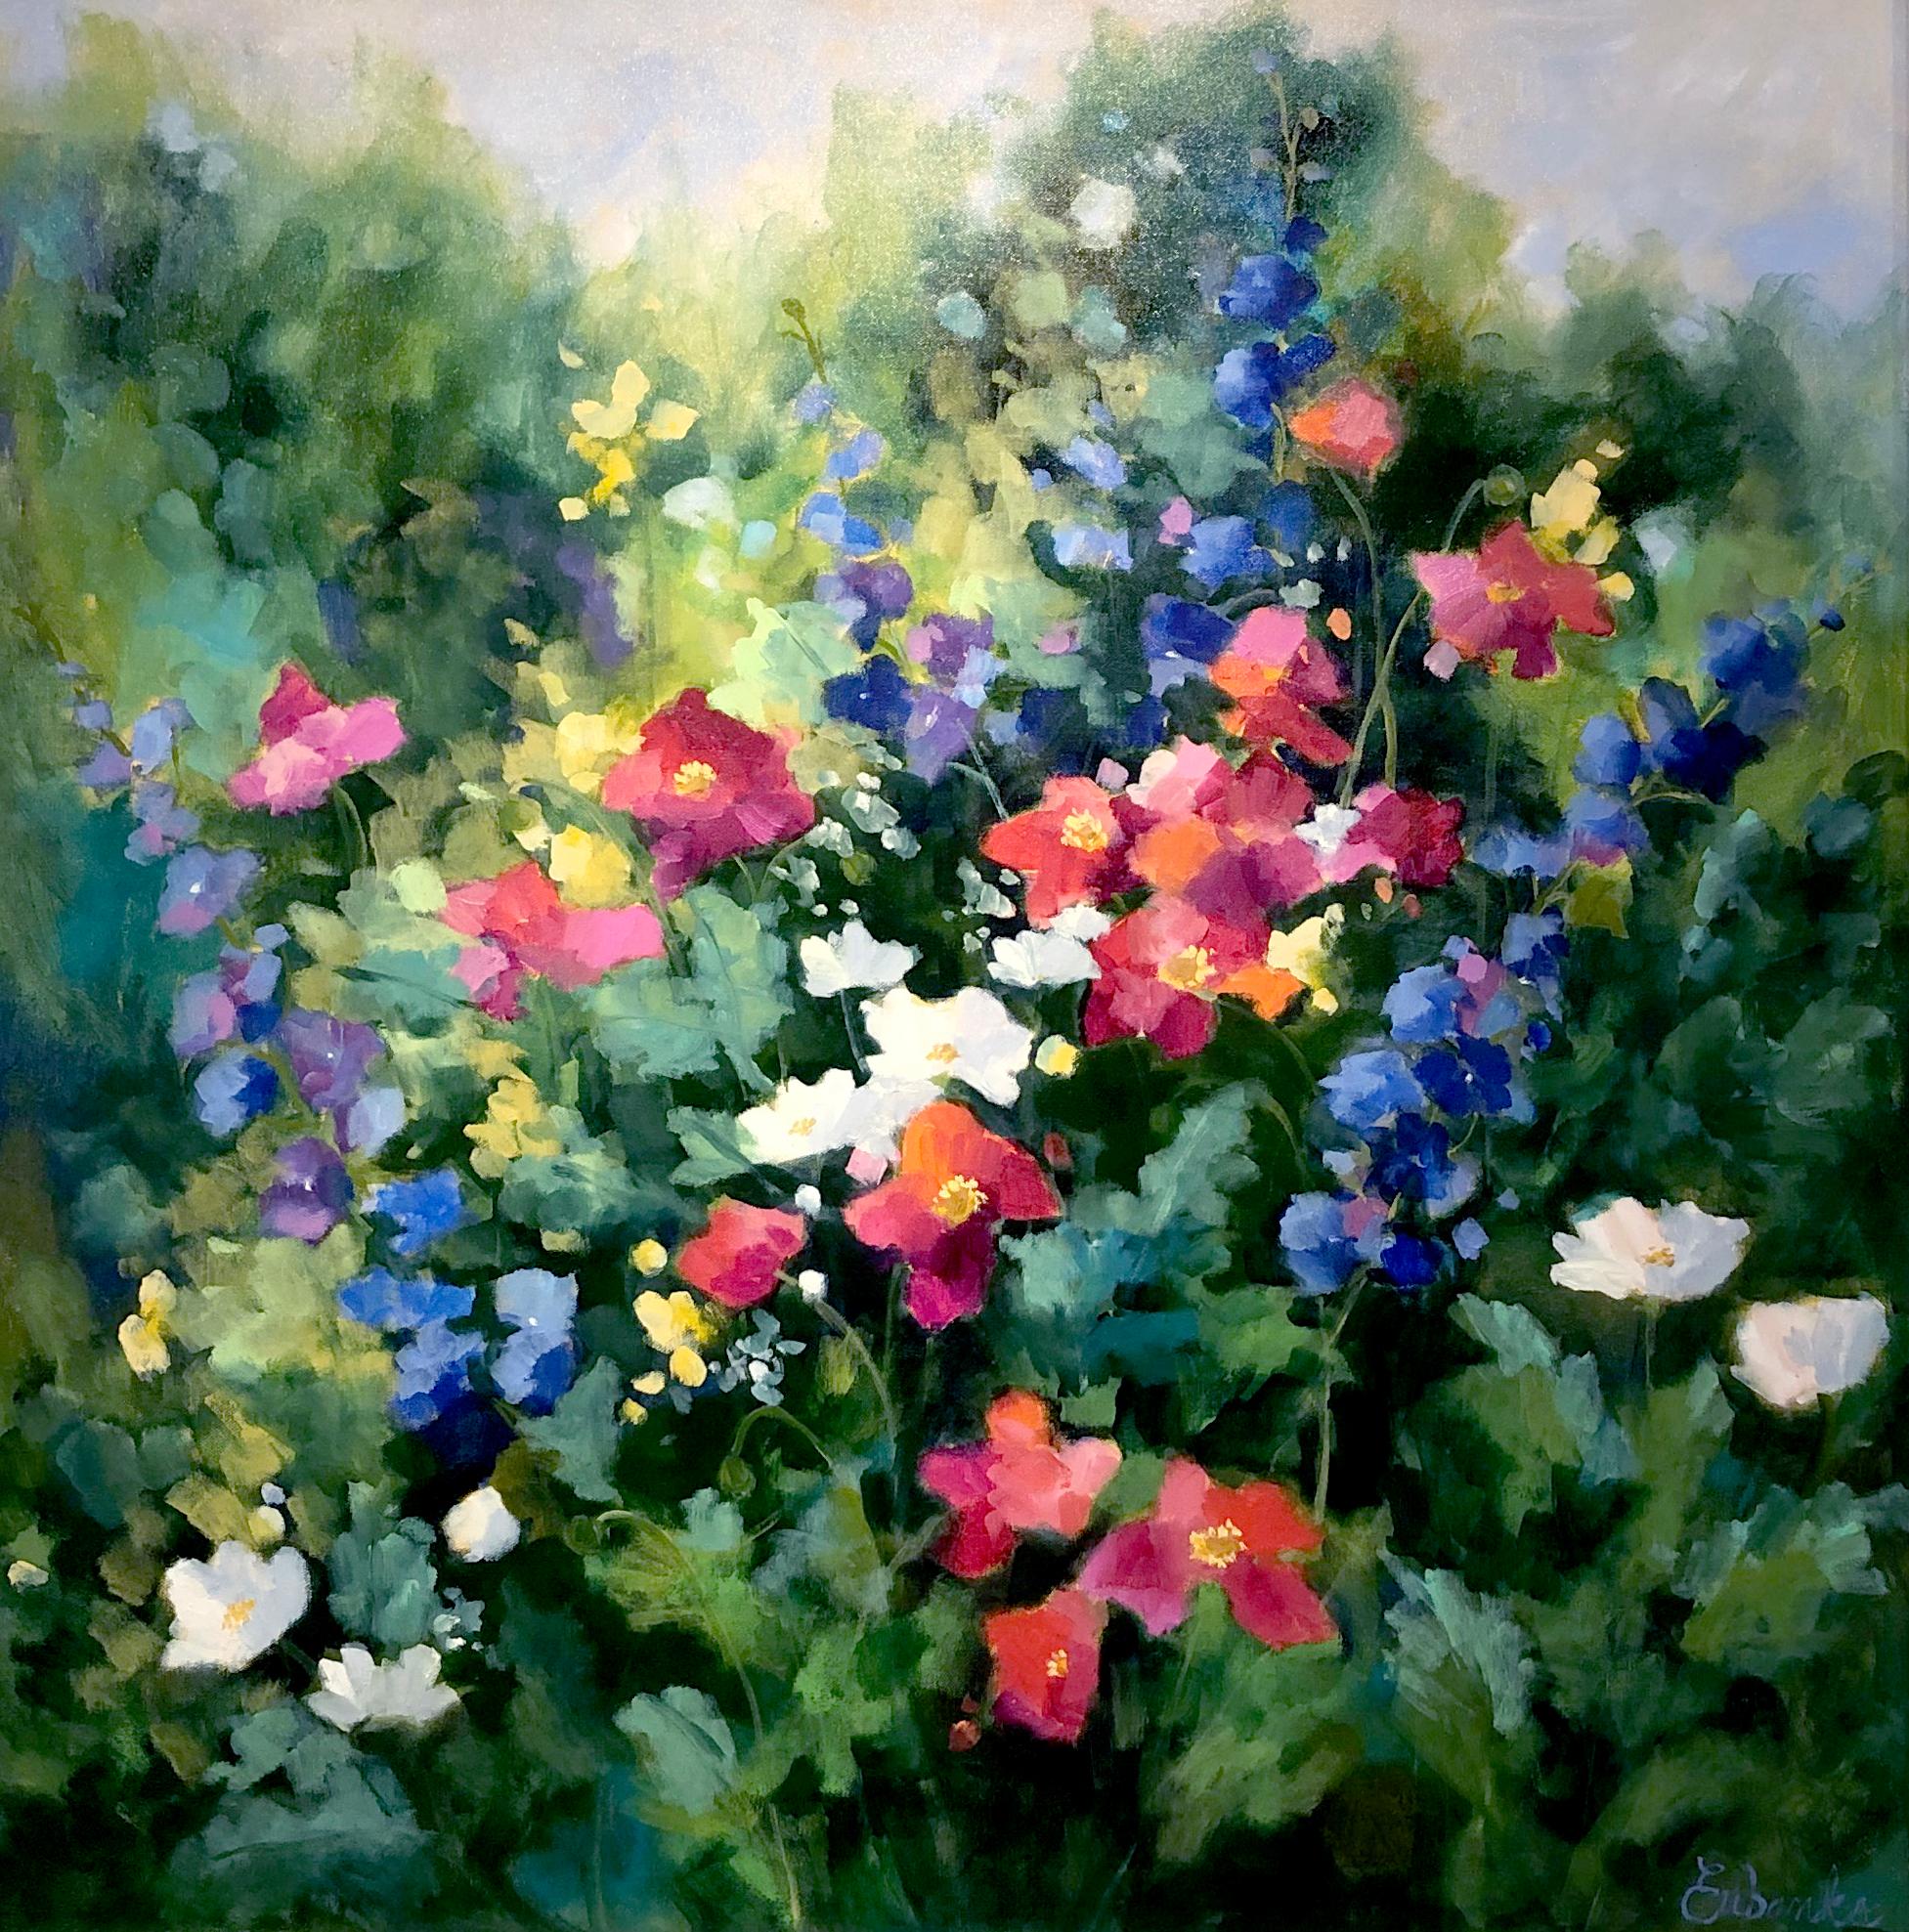 Dieses farbenfrohe Werk, "Full of Joy", ist ein 36x36 Ölgemälde auf Leinwand der Künstlerin Lori Eubanks. Mit einem Blick in einen üppig grünen Garten mit leuchtenden Blüten. Die abgebildeten Blumen sind rot, blau, weiß, gelb und violett. 

Über den